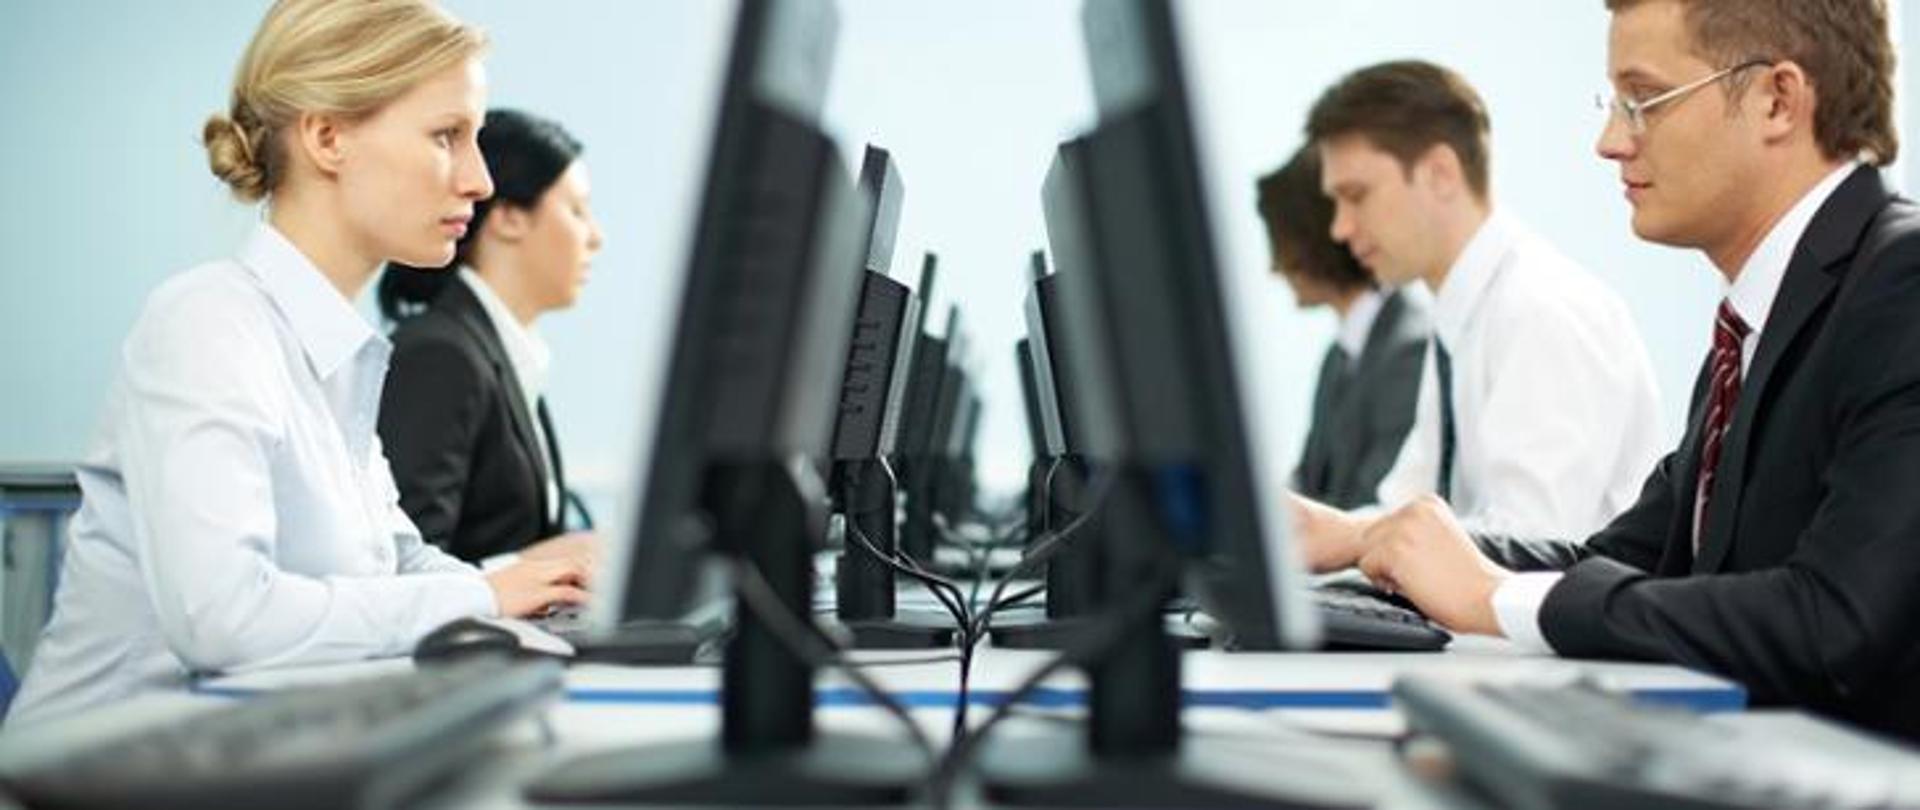 Kobiety i mężczyźni w strojach biurowych pracujący przy komputerach